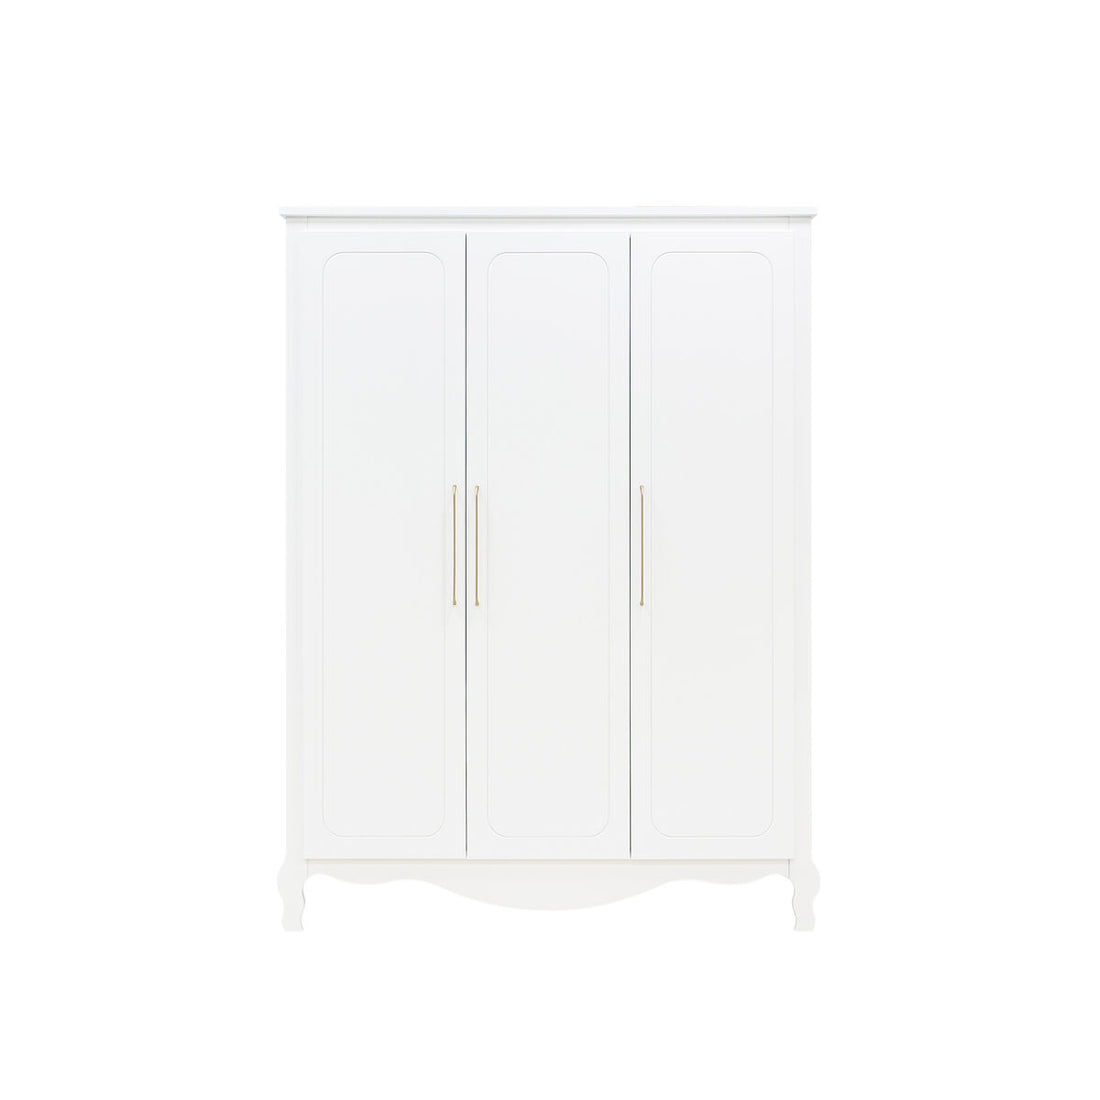 bopita-3-door-wardrobe-elena-white-bopt-15613611- (1)